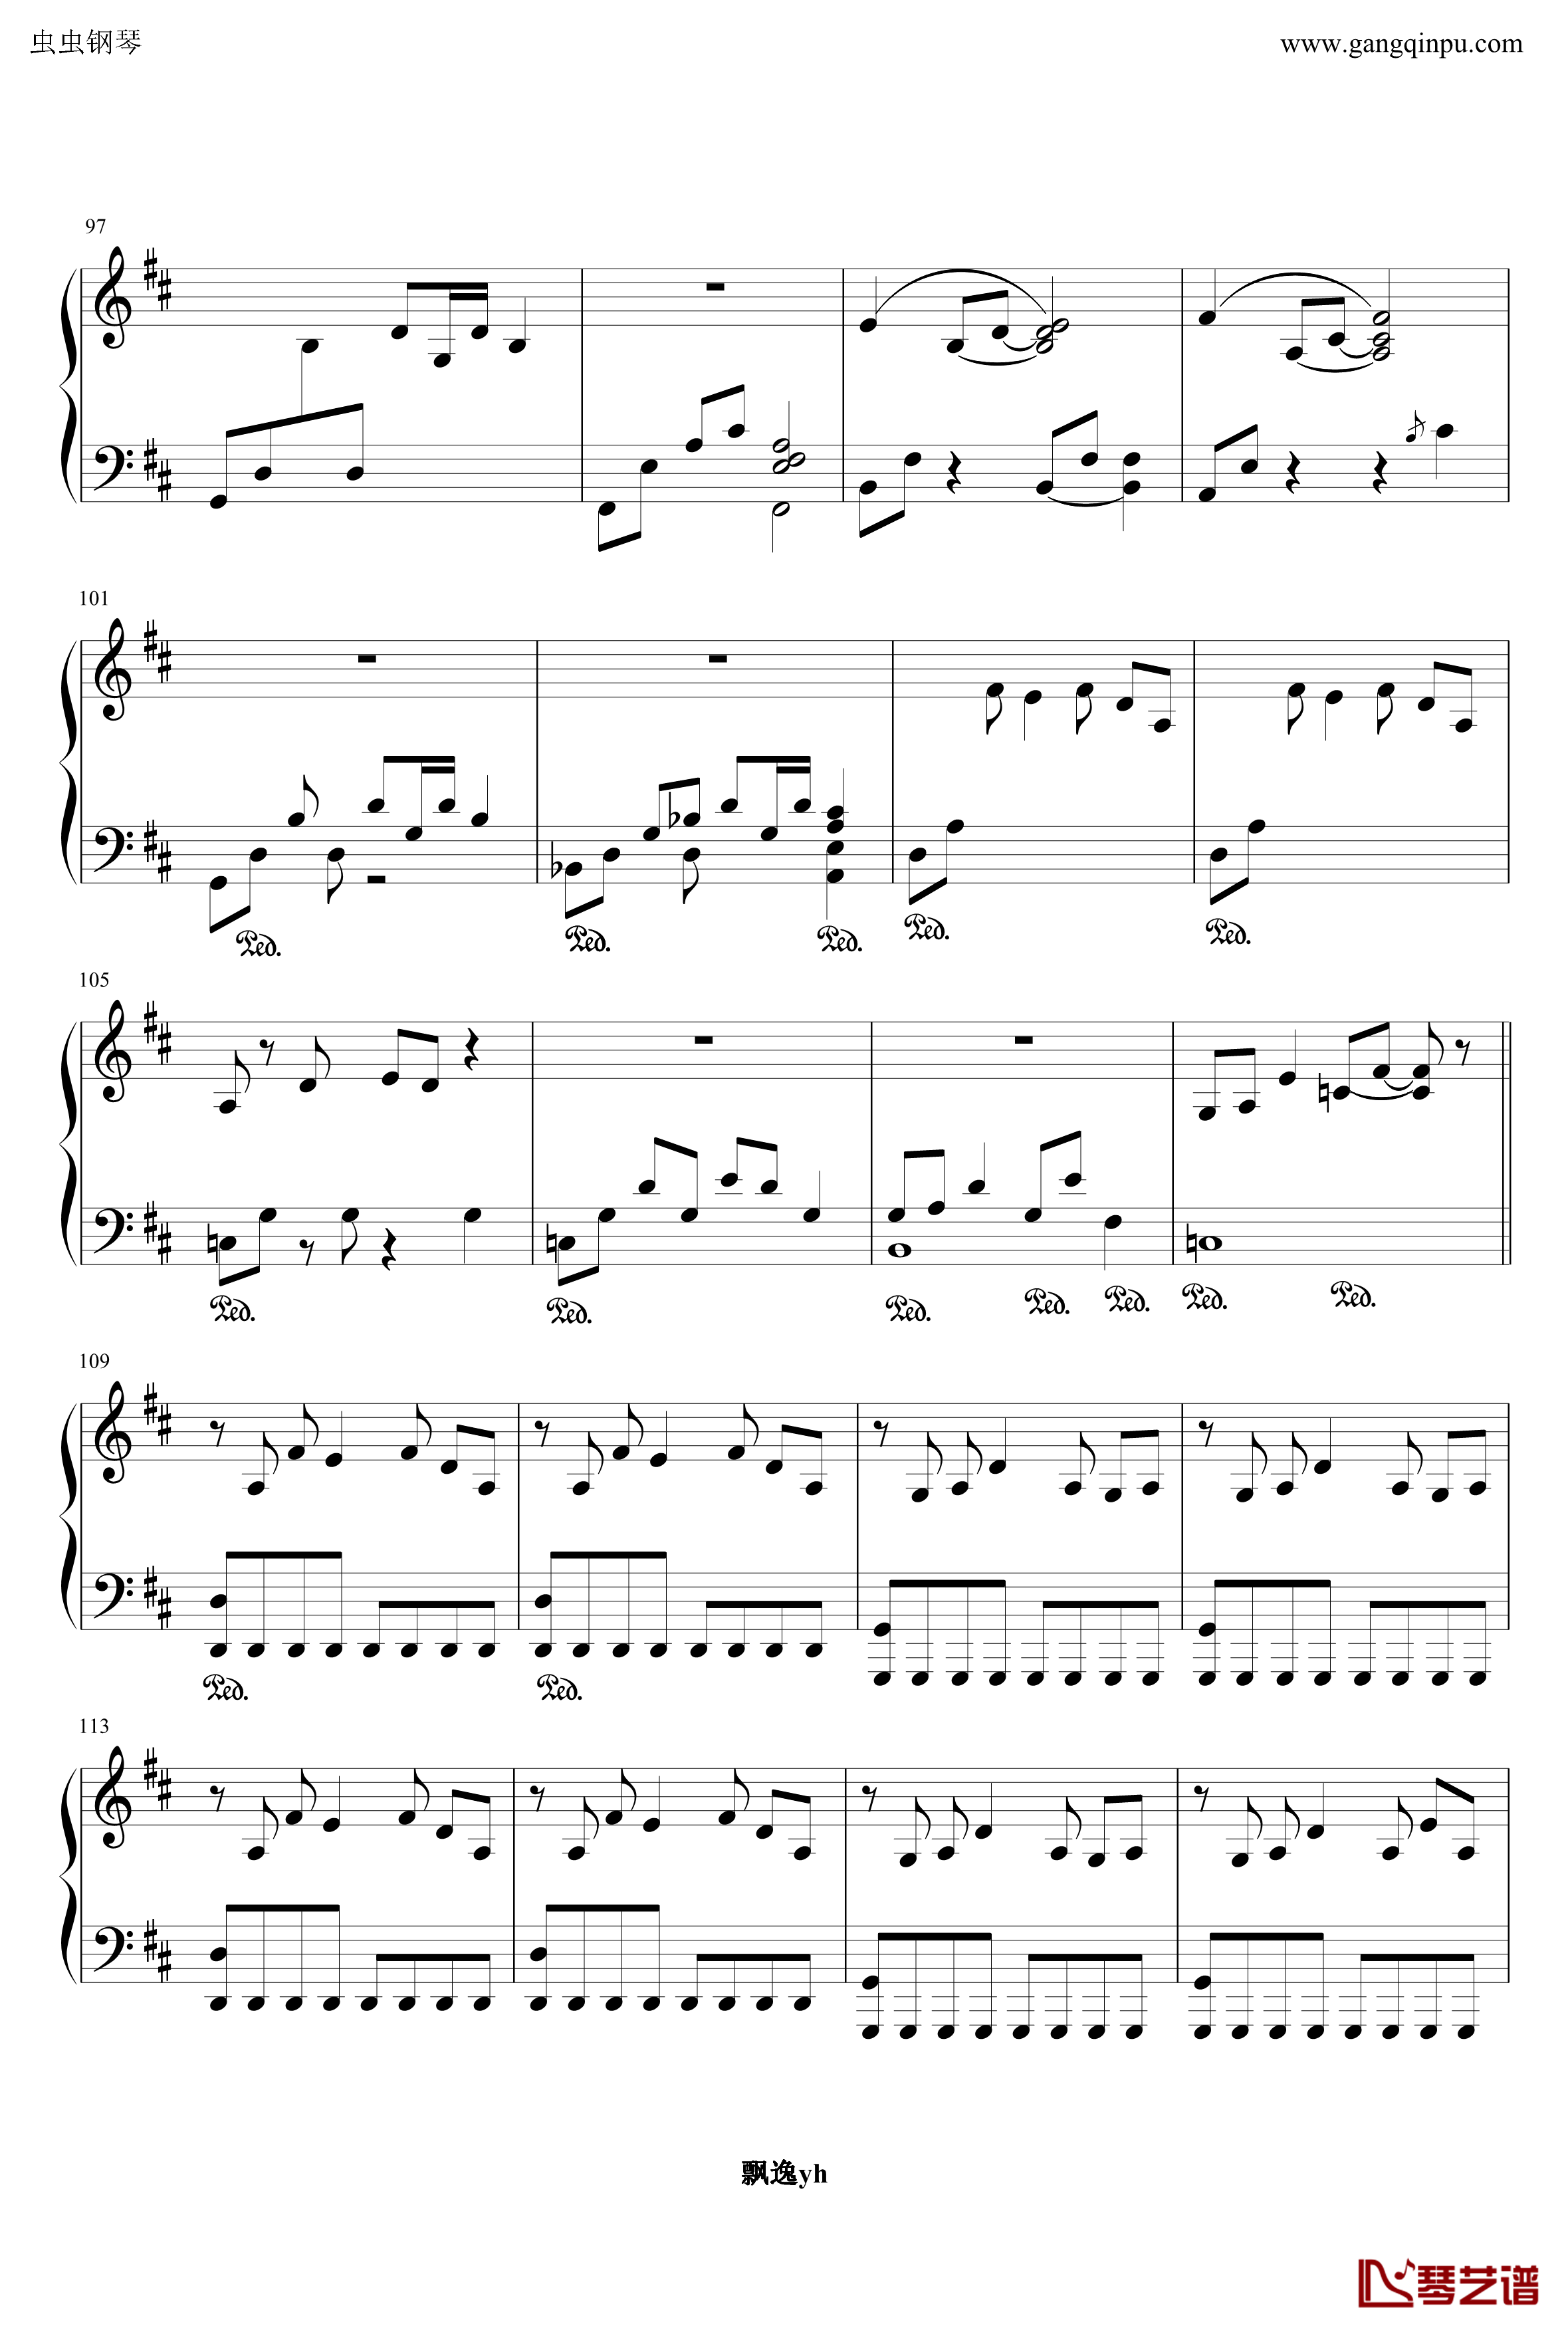 明珠港钢琴谱-完整版-冒险岛7